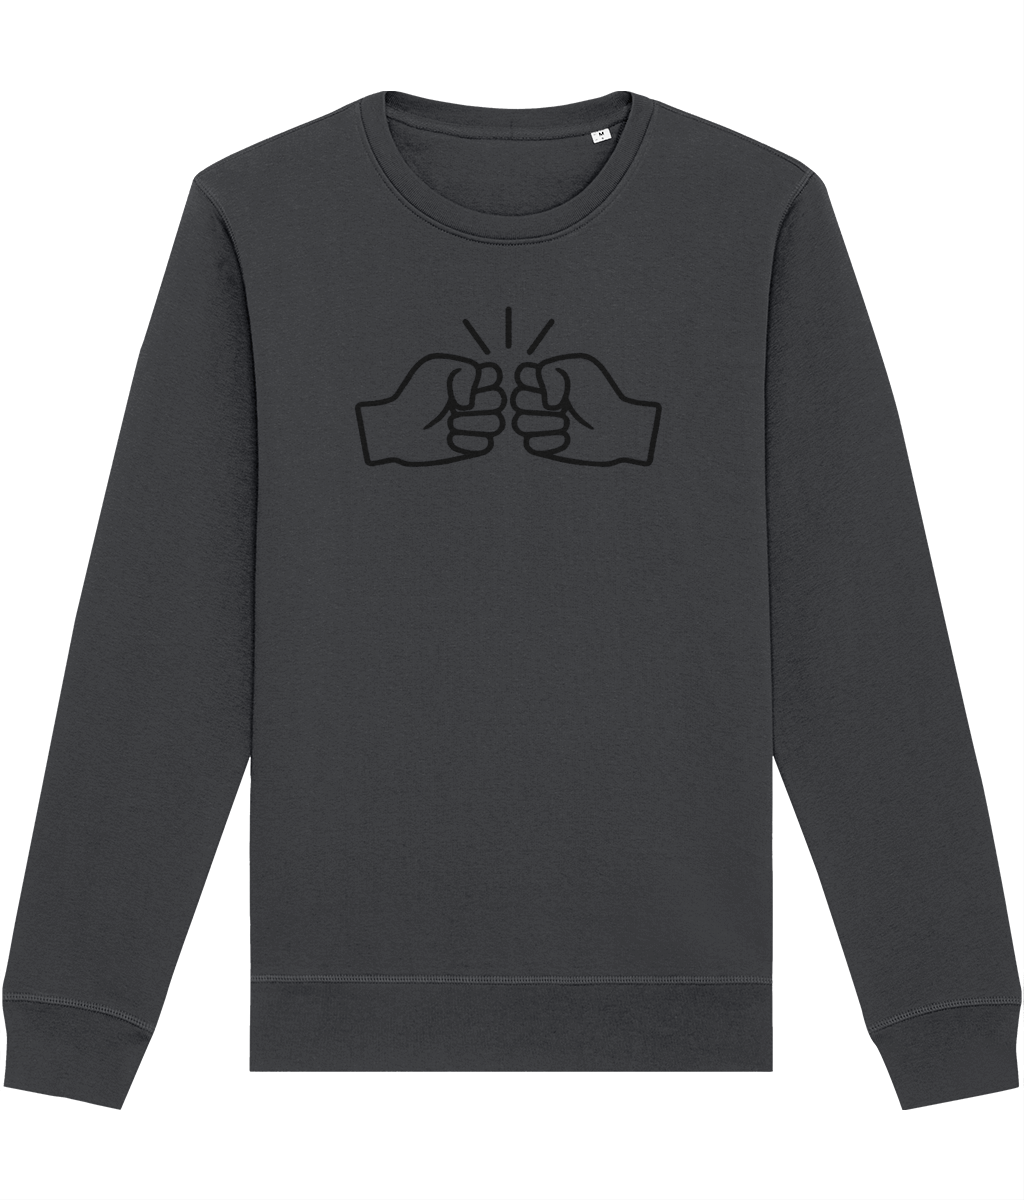 We Run Tings, Original, Black Logo, Organic Ring-Spun Combed Cotton Sweatshirt